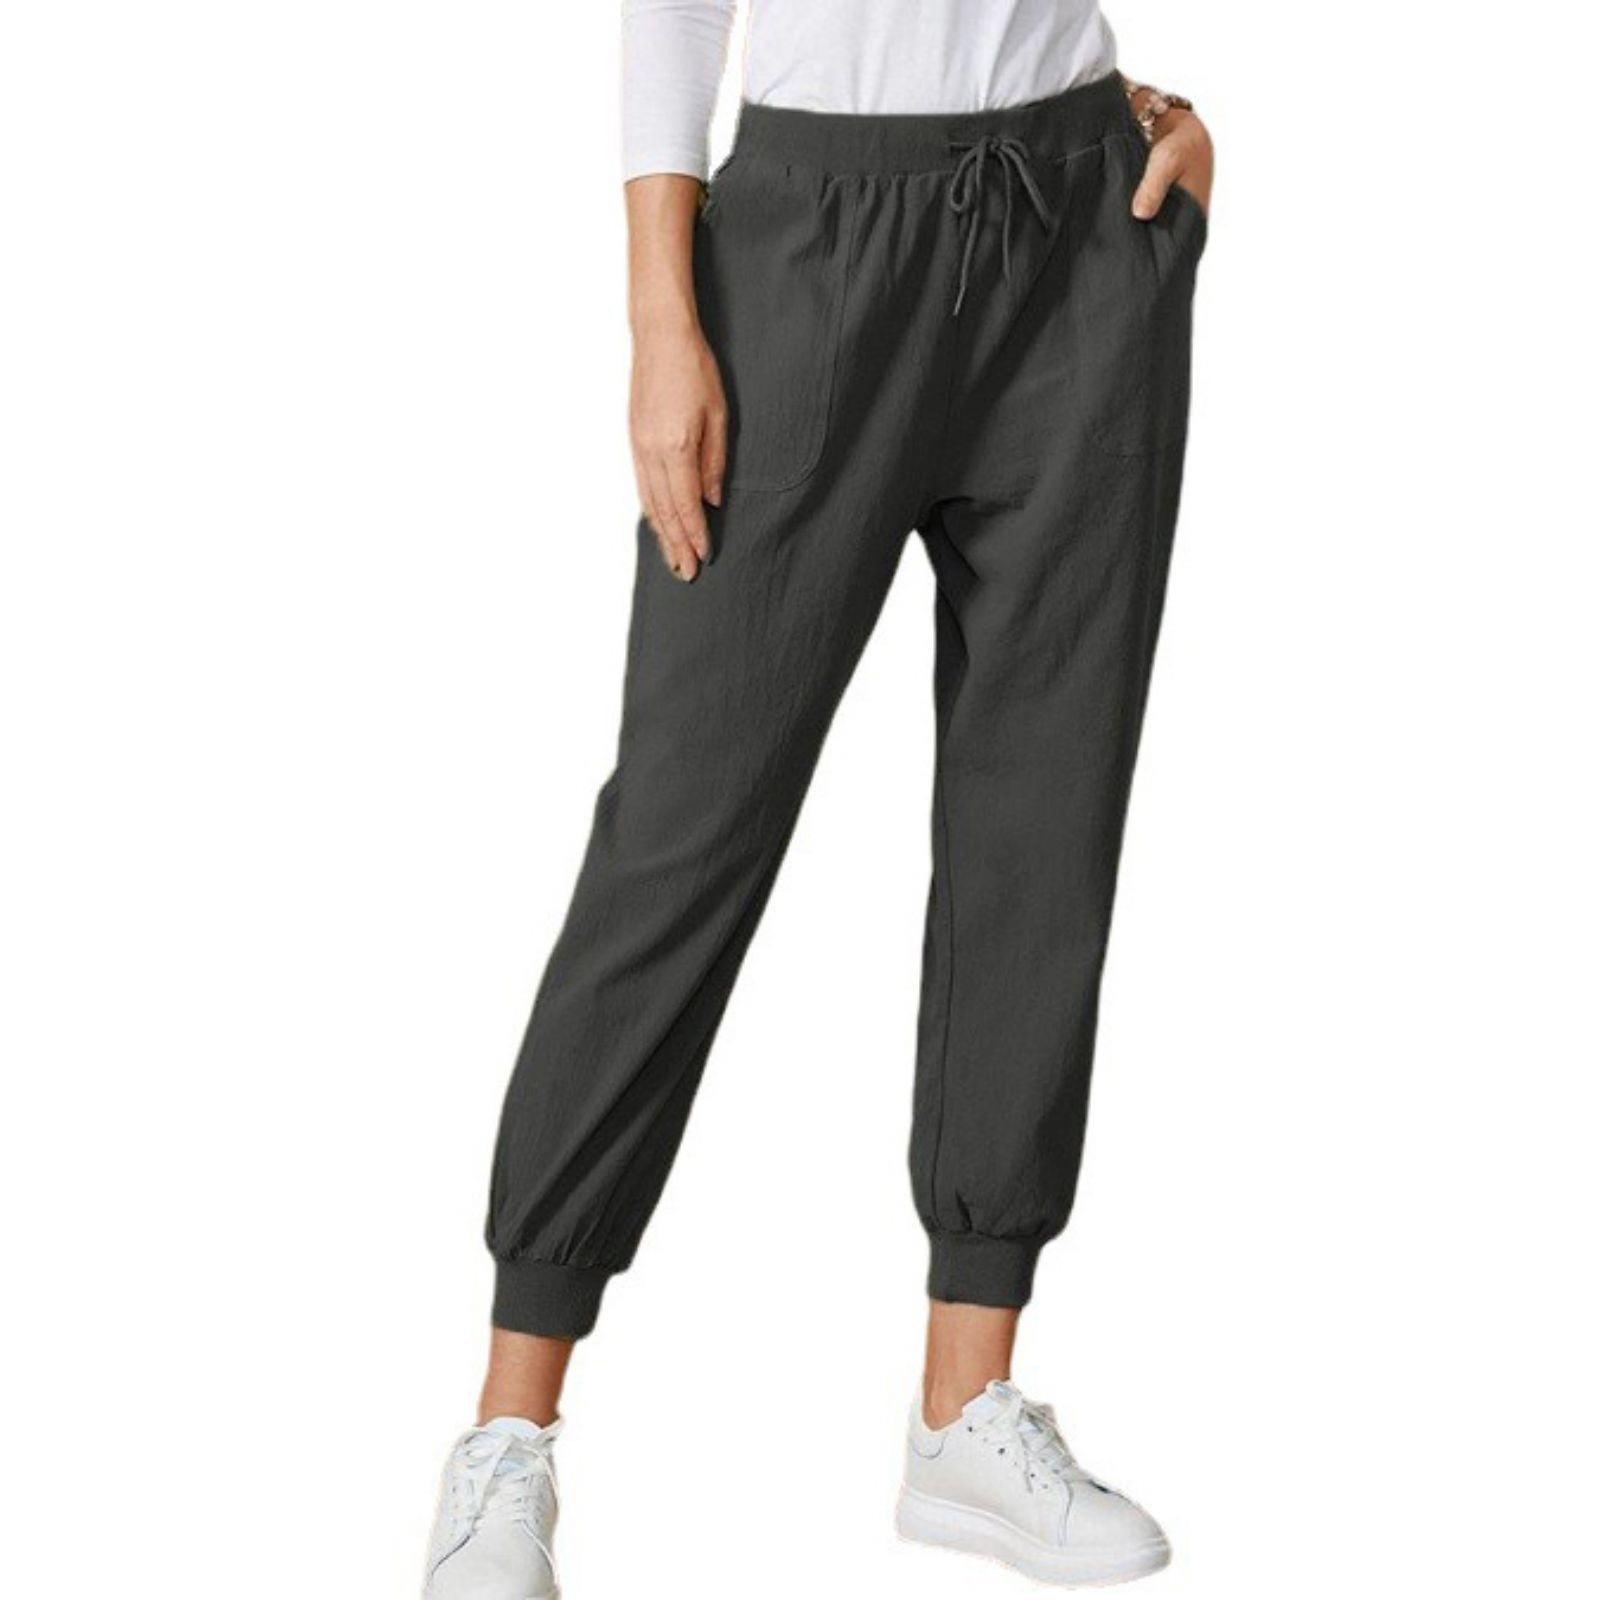 Eashery Casual Pants For Women Petite Sweatpants Women Women鈥檚 Relaxed ...